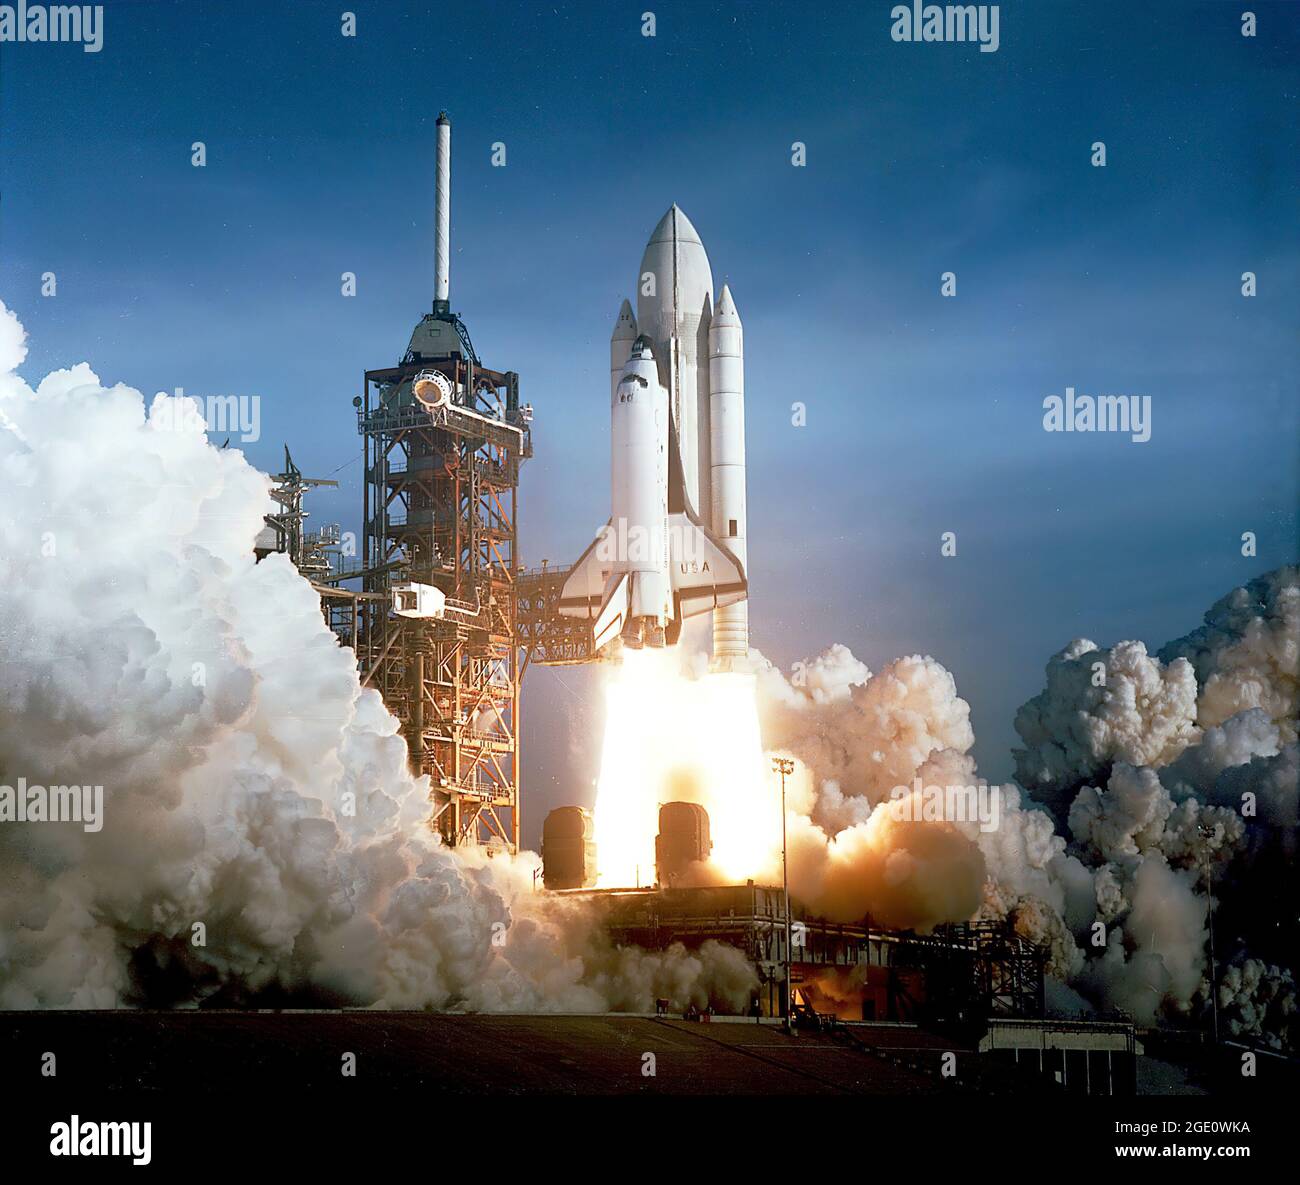 Lancio di STS-1 dopo sei anni di silenzio, il tuono di luce spaziale umana è stato sentito di nuovo, come il successo del lancio della prima navetta spaziale ha introdotto un nuovo concetto di utilizzo dello spazio. Missione STS-1, su Space Shuttle Columbia, lanciata dal complesso di lancio 39A al Kennedy Space Center appena pochi secondi dopo le 7 del mattino del 12 aprile 1981. Ha trasportato gli astronauti John Young e Robert Crippen in una missione orbitale terrestre prevista per durare 54 ore. La missione si è conclusa con l'atterraggio dello Space Shuttle Columbia alla base dell'aeronautica di Edwards in California. Foto Stock